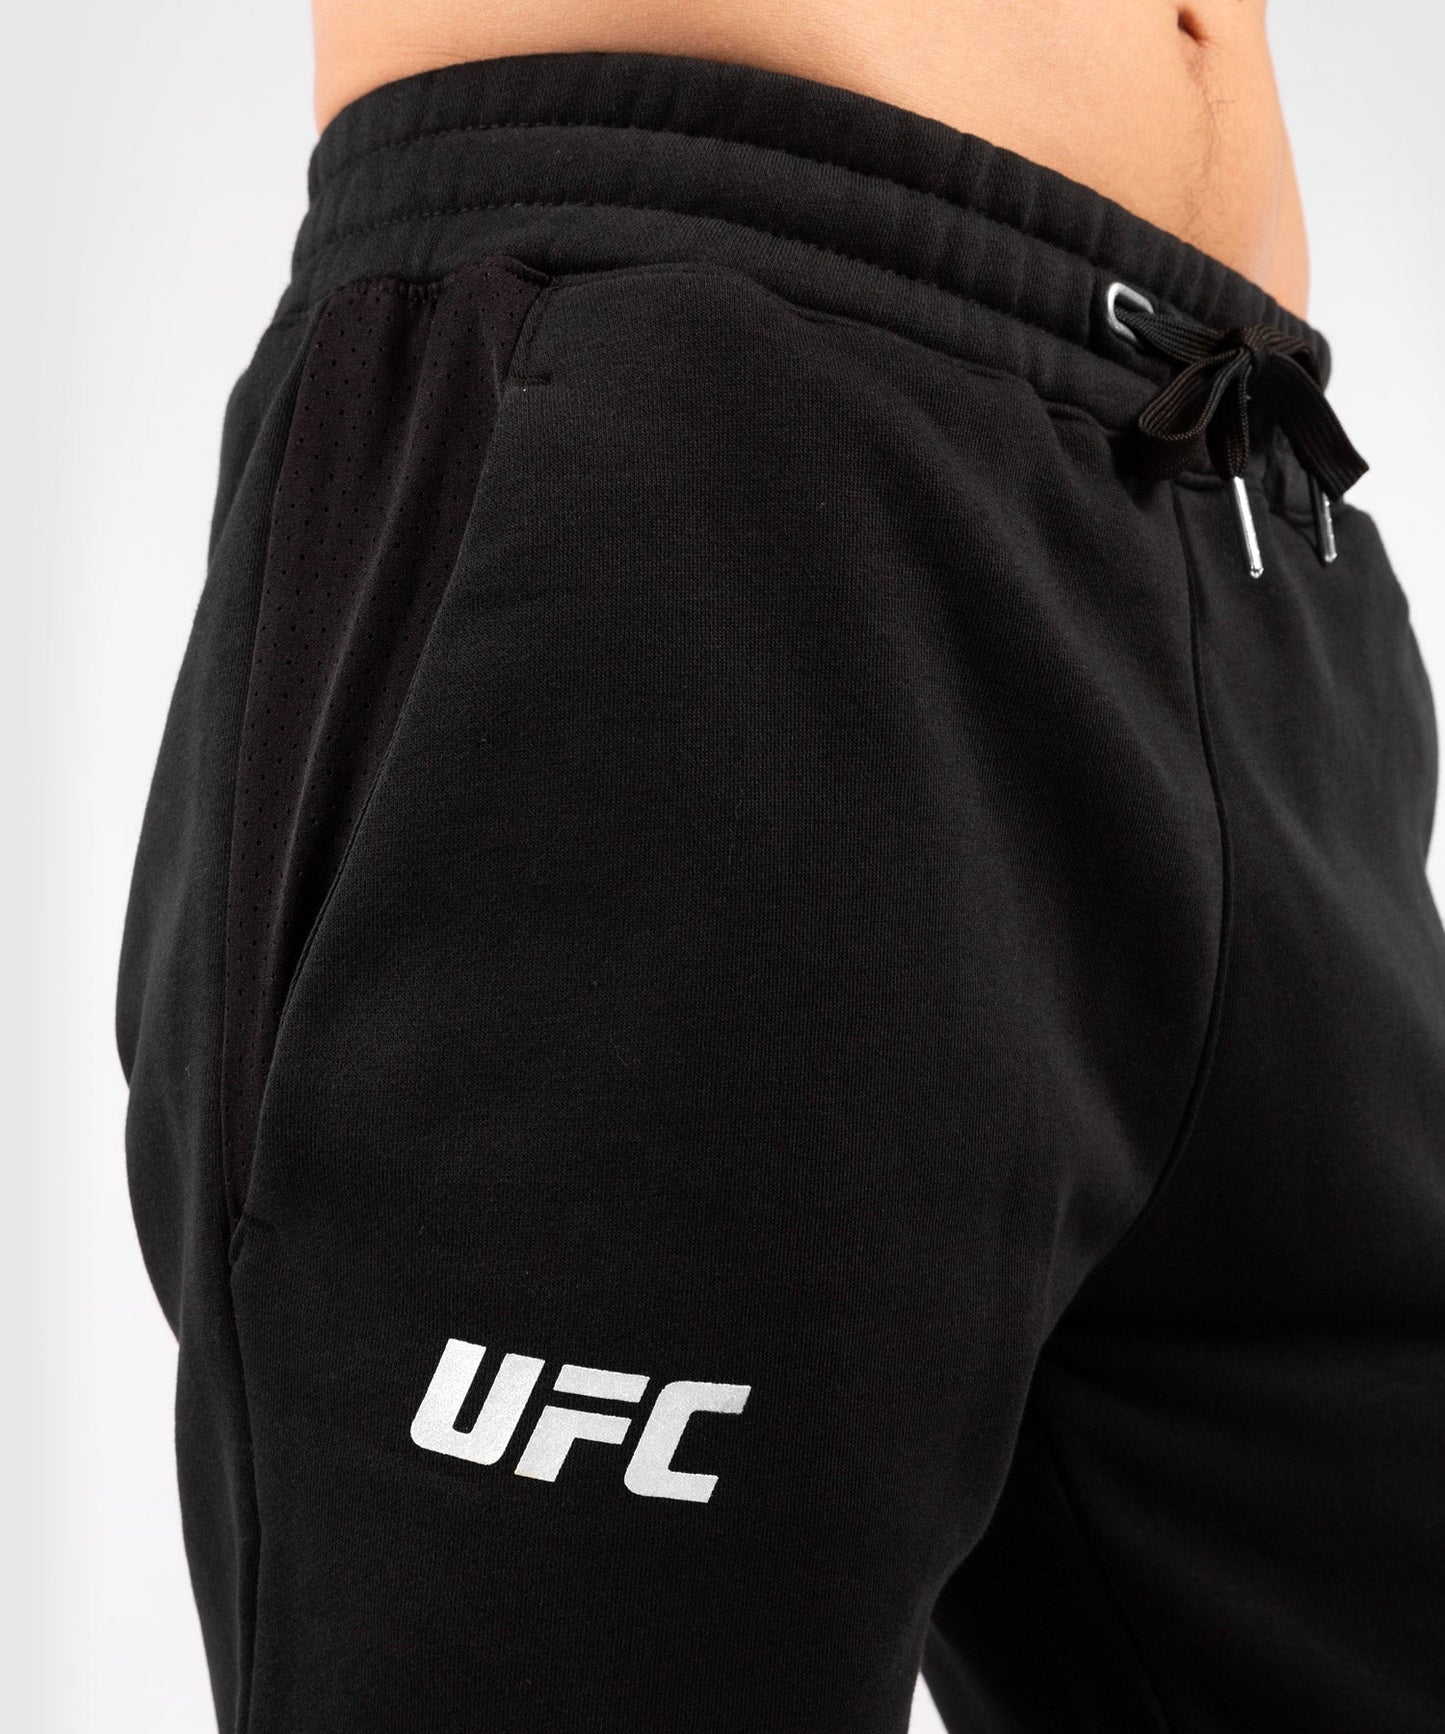 UFC Venum Replica Men's Pants - Black